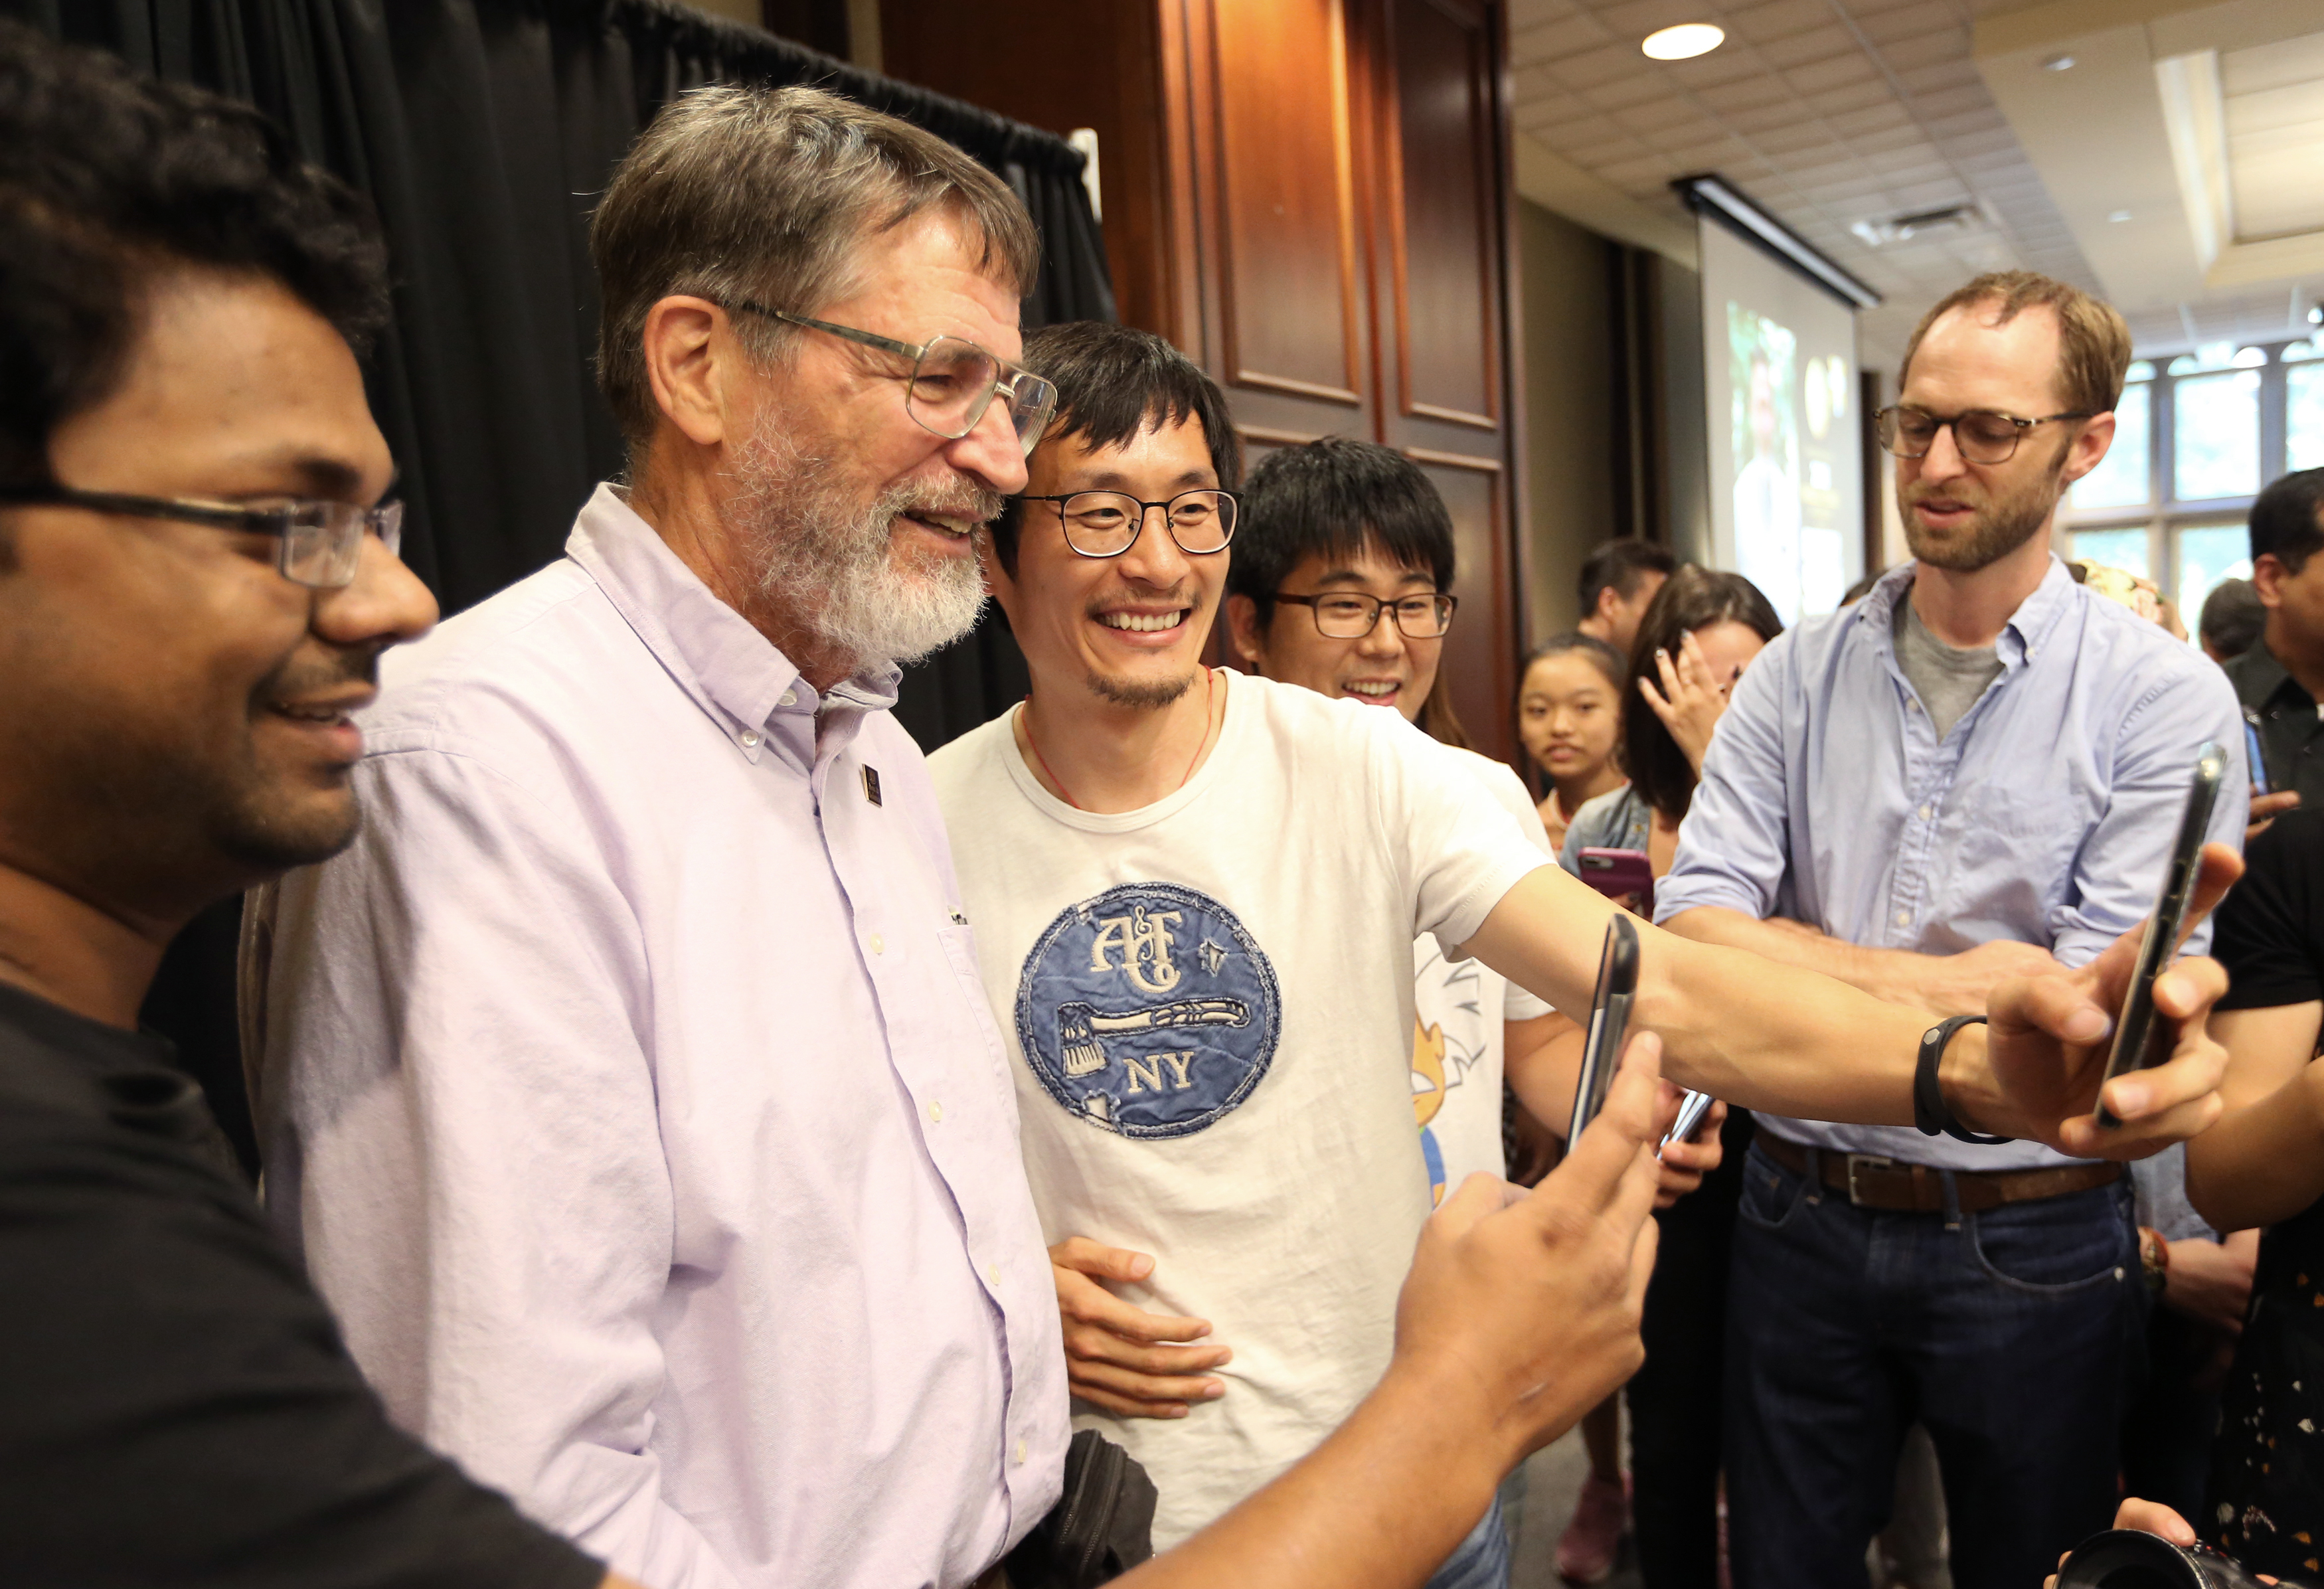 A Missouri Egyetem hallgatói szelfiznek George P. Smith professzorral a Nobel-díj bejelentése után